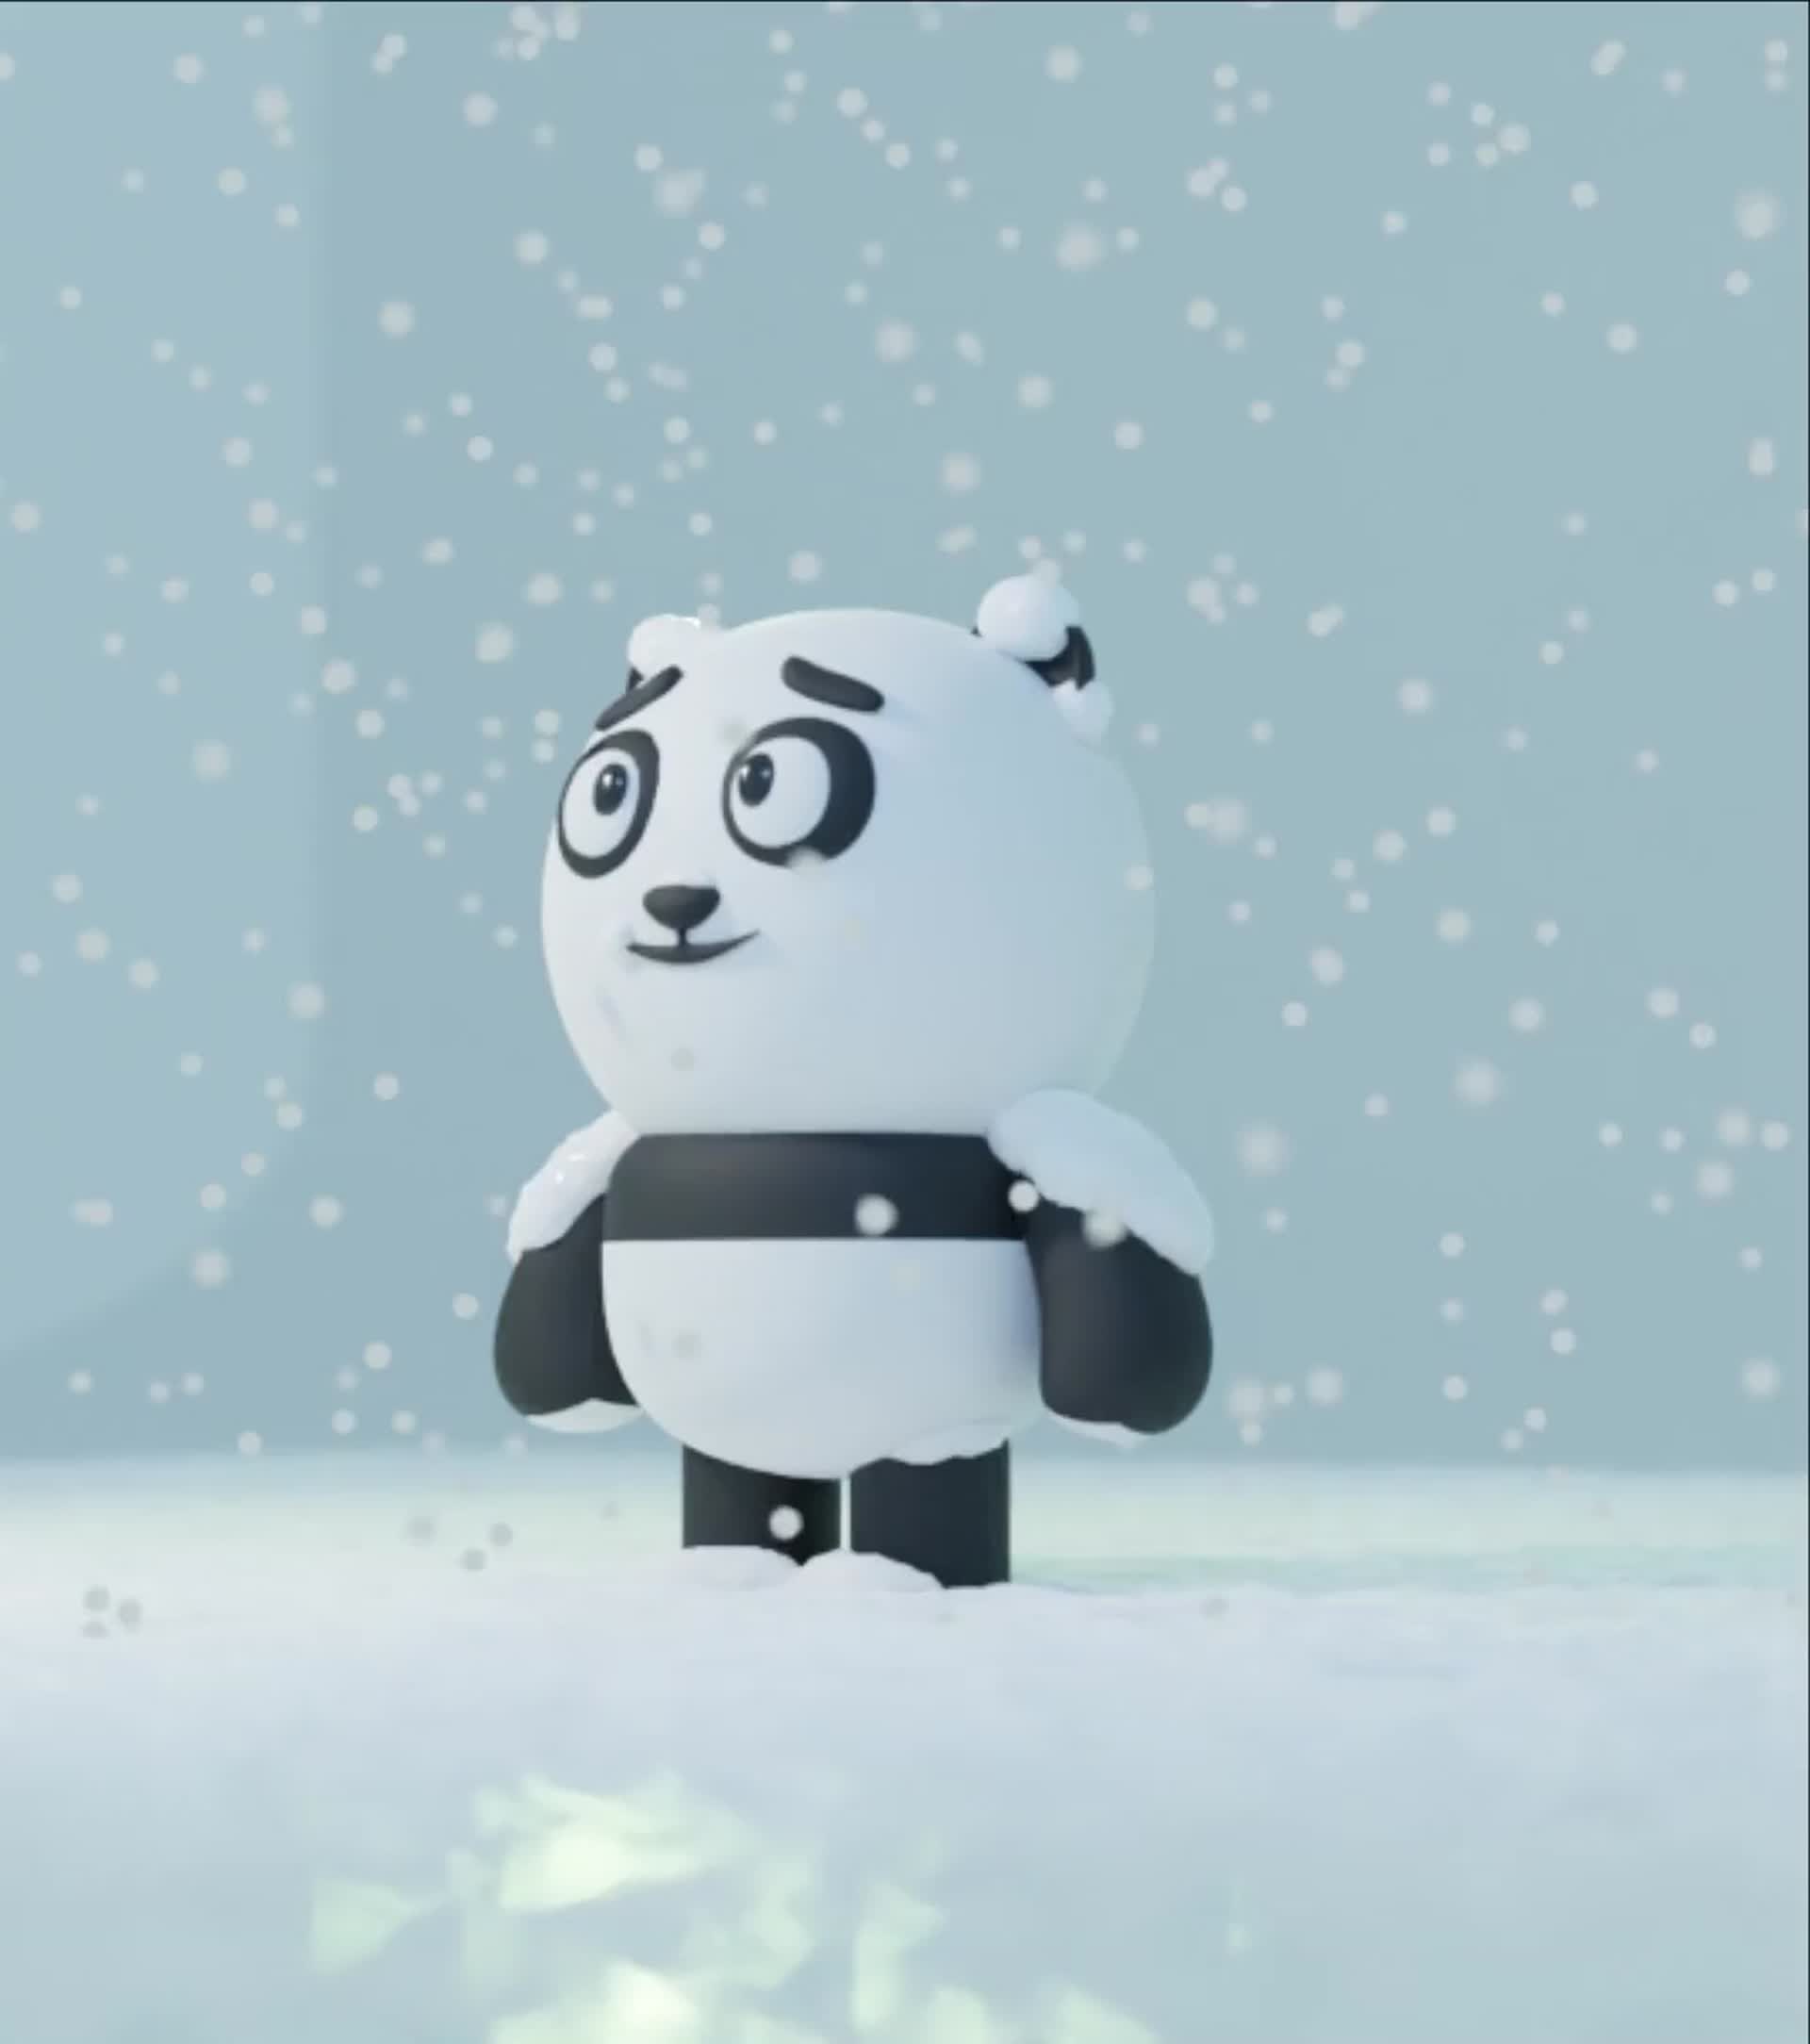 ArtStation - Cute Little Panda